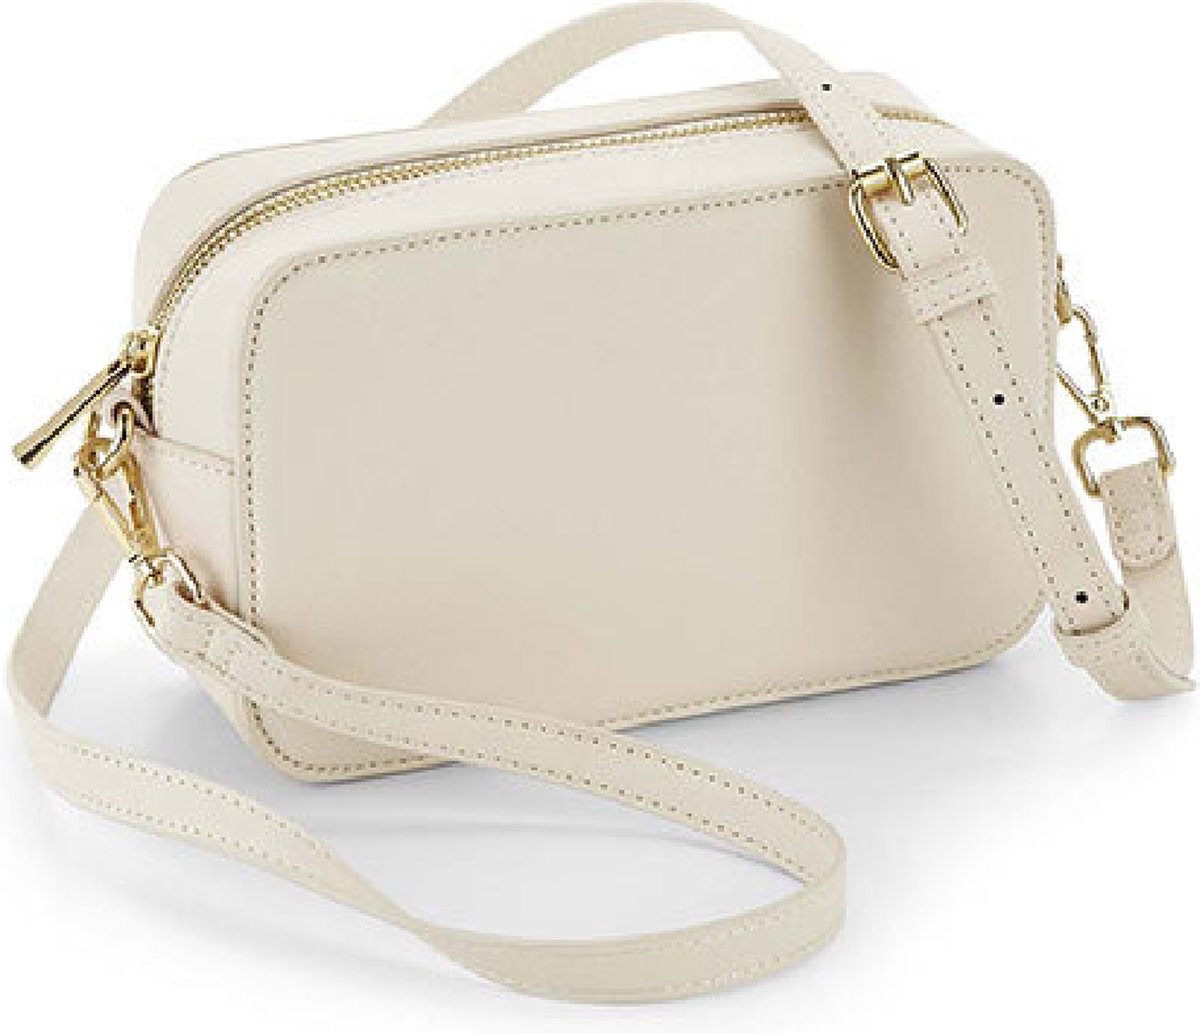 Handtasje - cross body bag - stijlvol klein handtasje in lederlook - feestelijk tasje - handtas - GRATIS gouden lippenbalsem!